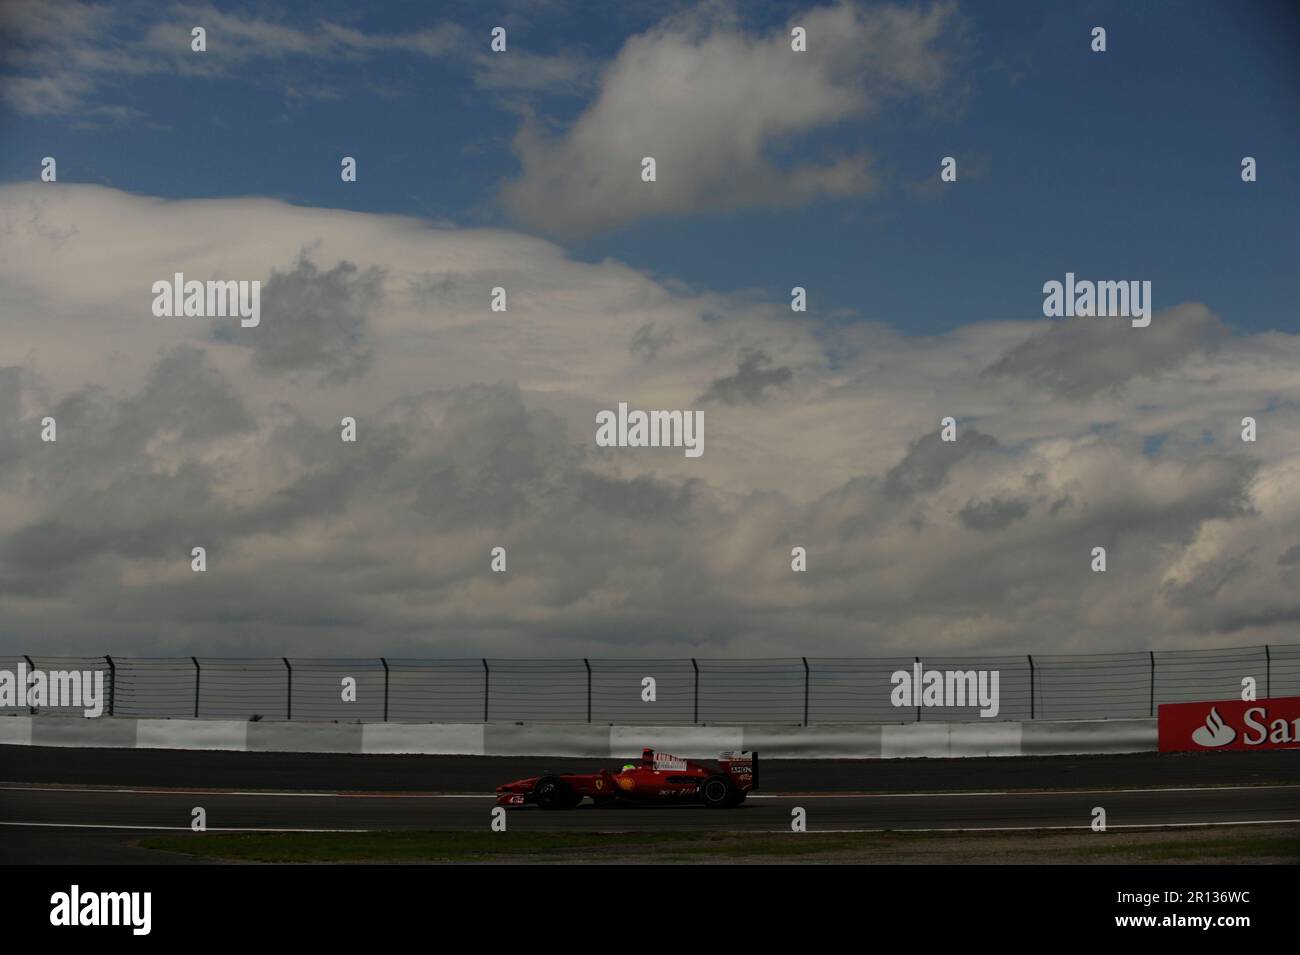 Felipe massa Ferrari Formel 1 Grand Prix von Deutschland auf dem Nürburgring 12,7.2009. Foto Stock